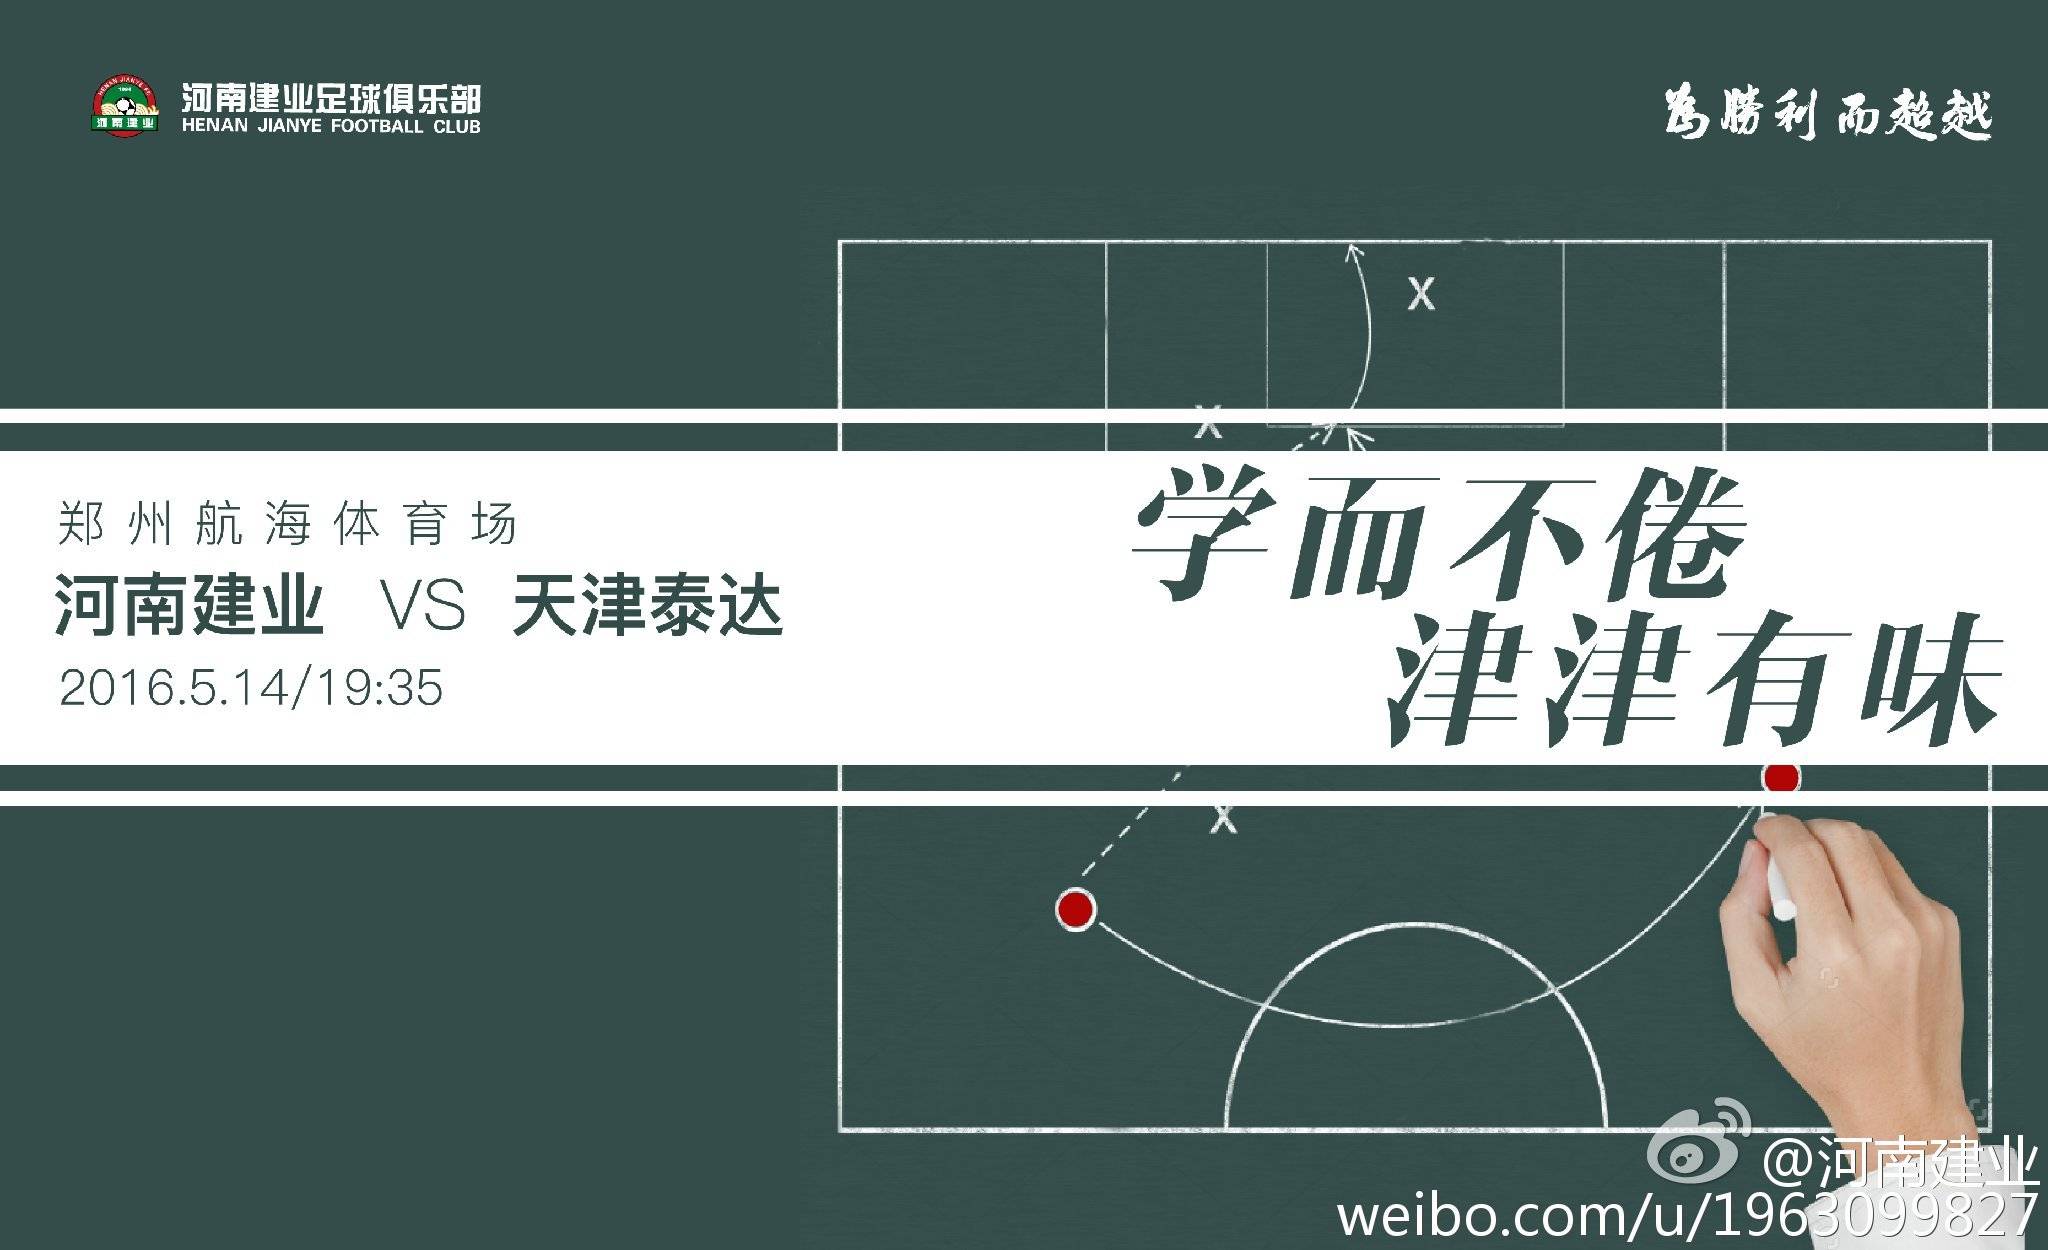 Xu Yang: Trò chơi tức giận nhưng trọng tài có khả năng kiểm soát trường hạn chế hạn chế